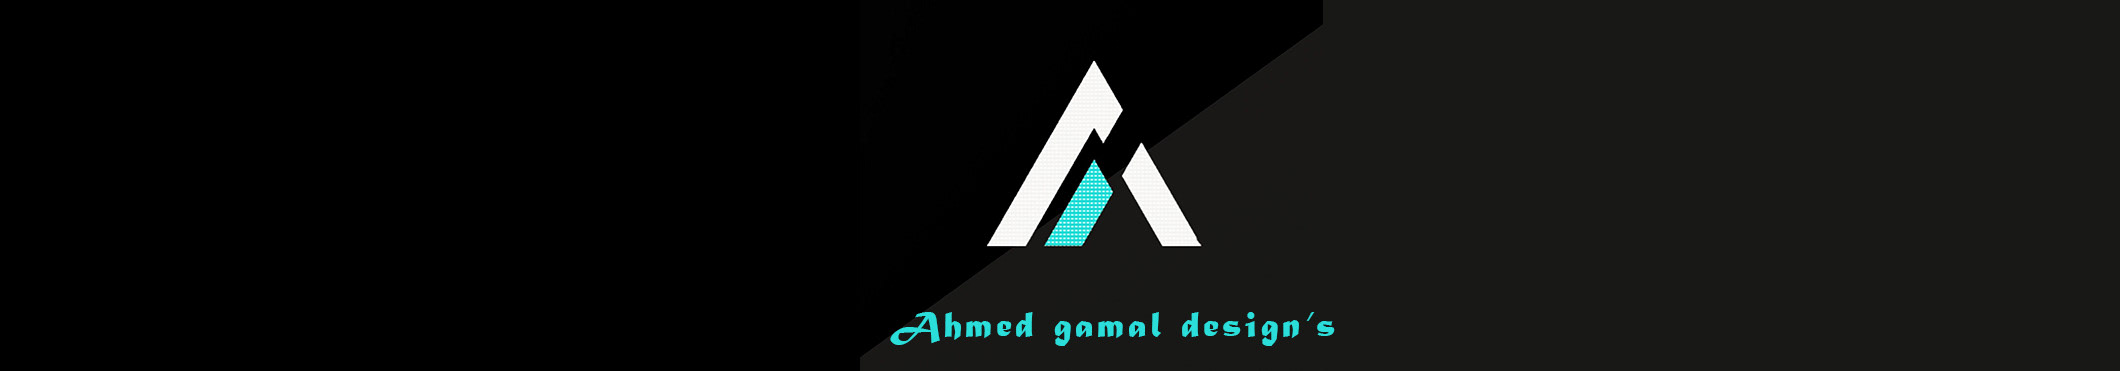 Ahmed M.Gamal のプロファイルバナー